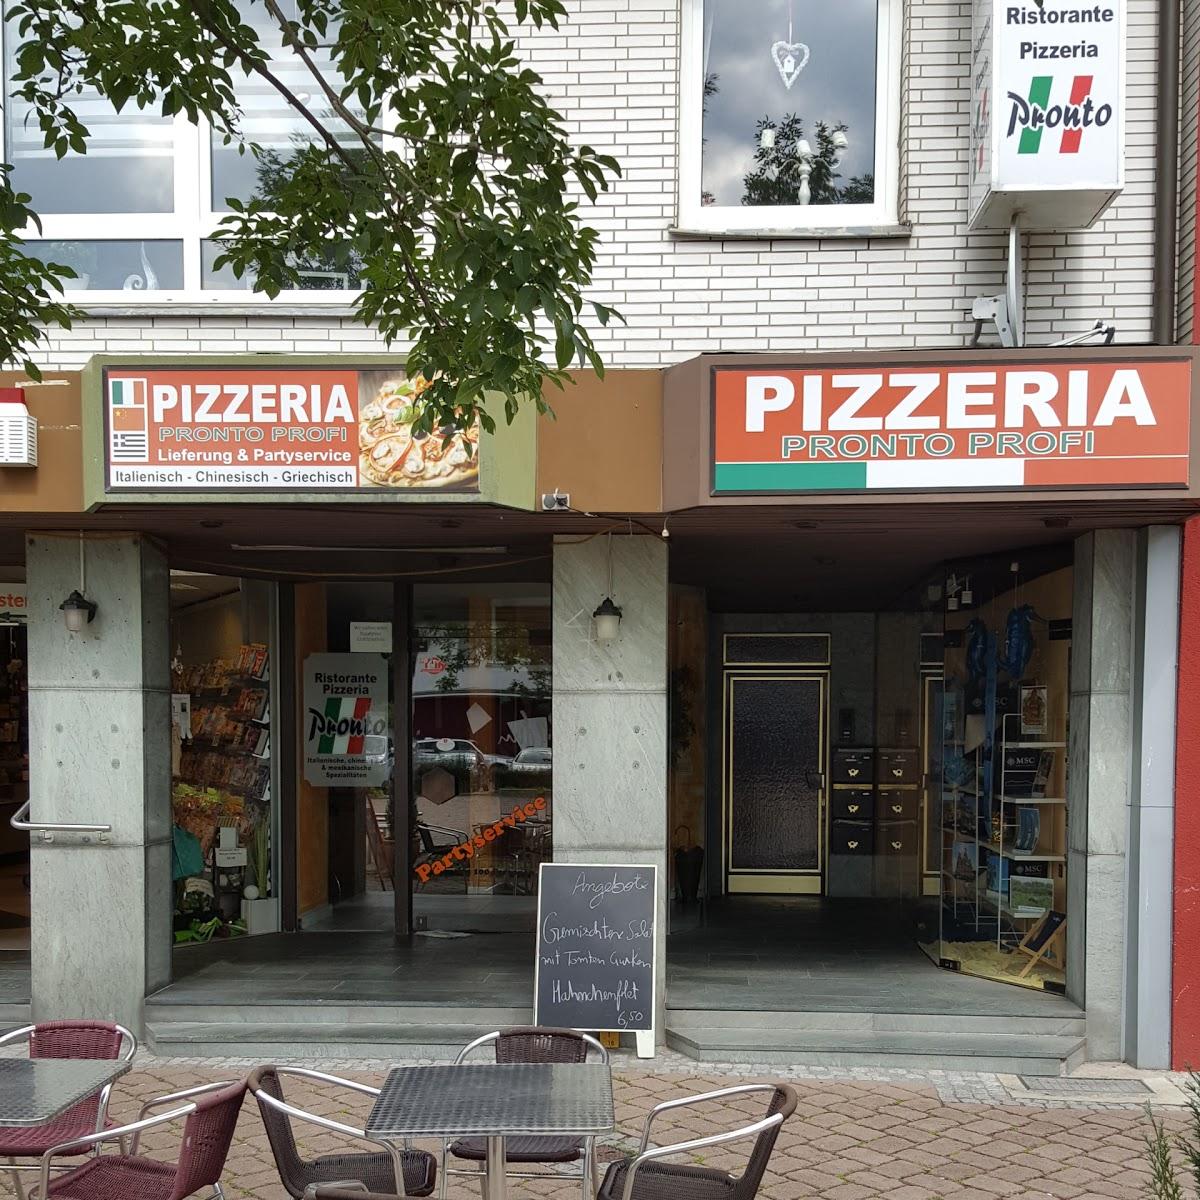 Restaurant "Pronto Profi Pizza Express" in Unna